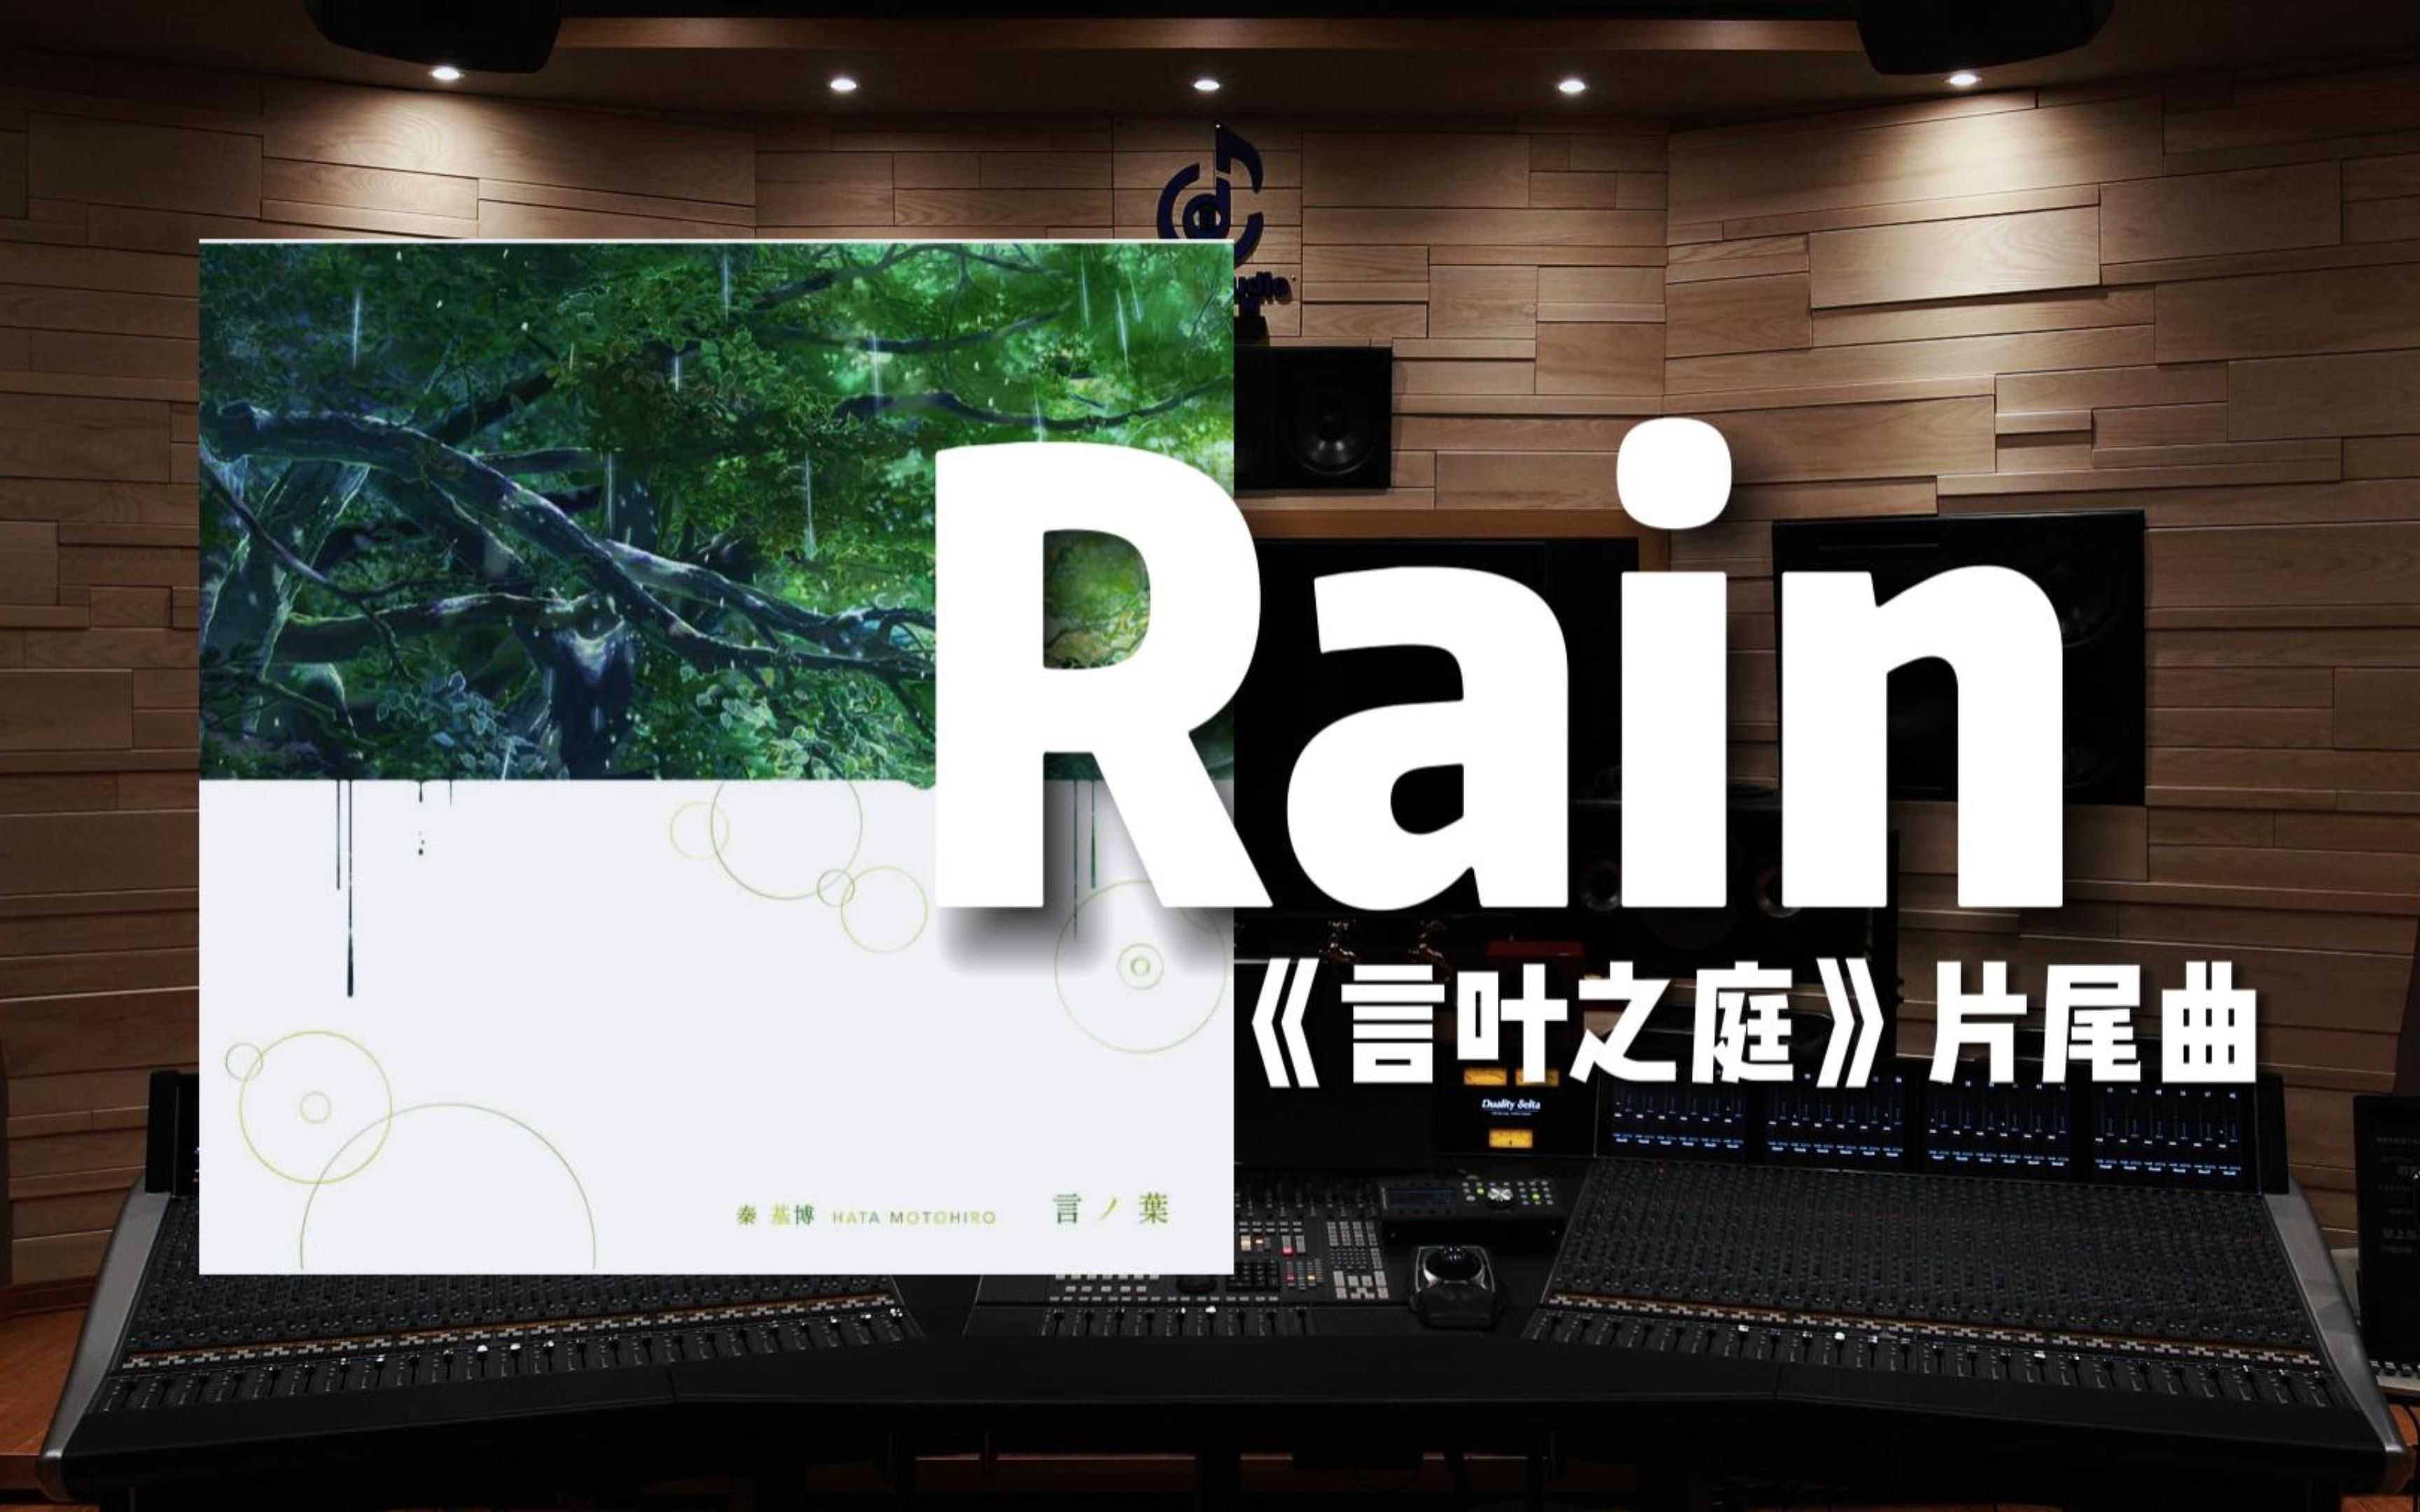 【言叶之庭｜Rain】百万级录音棚听《Rain》动画电影《言叶之庭》片尾曲【Hi-Res】